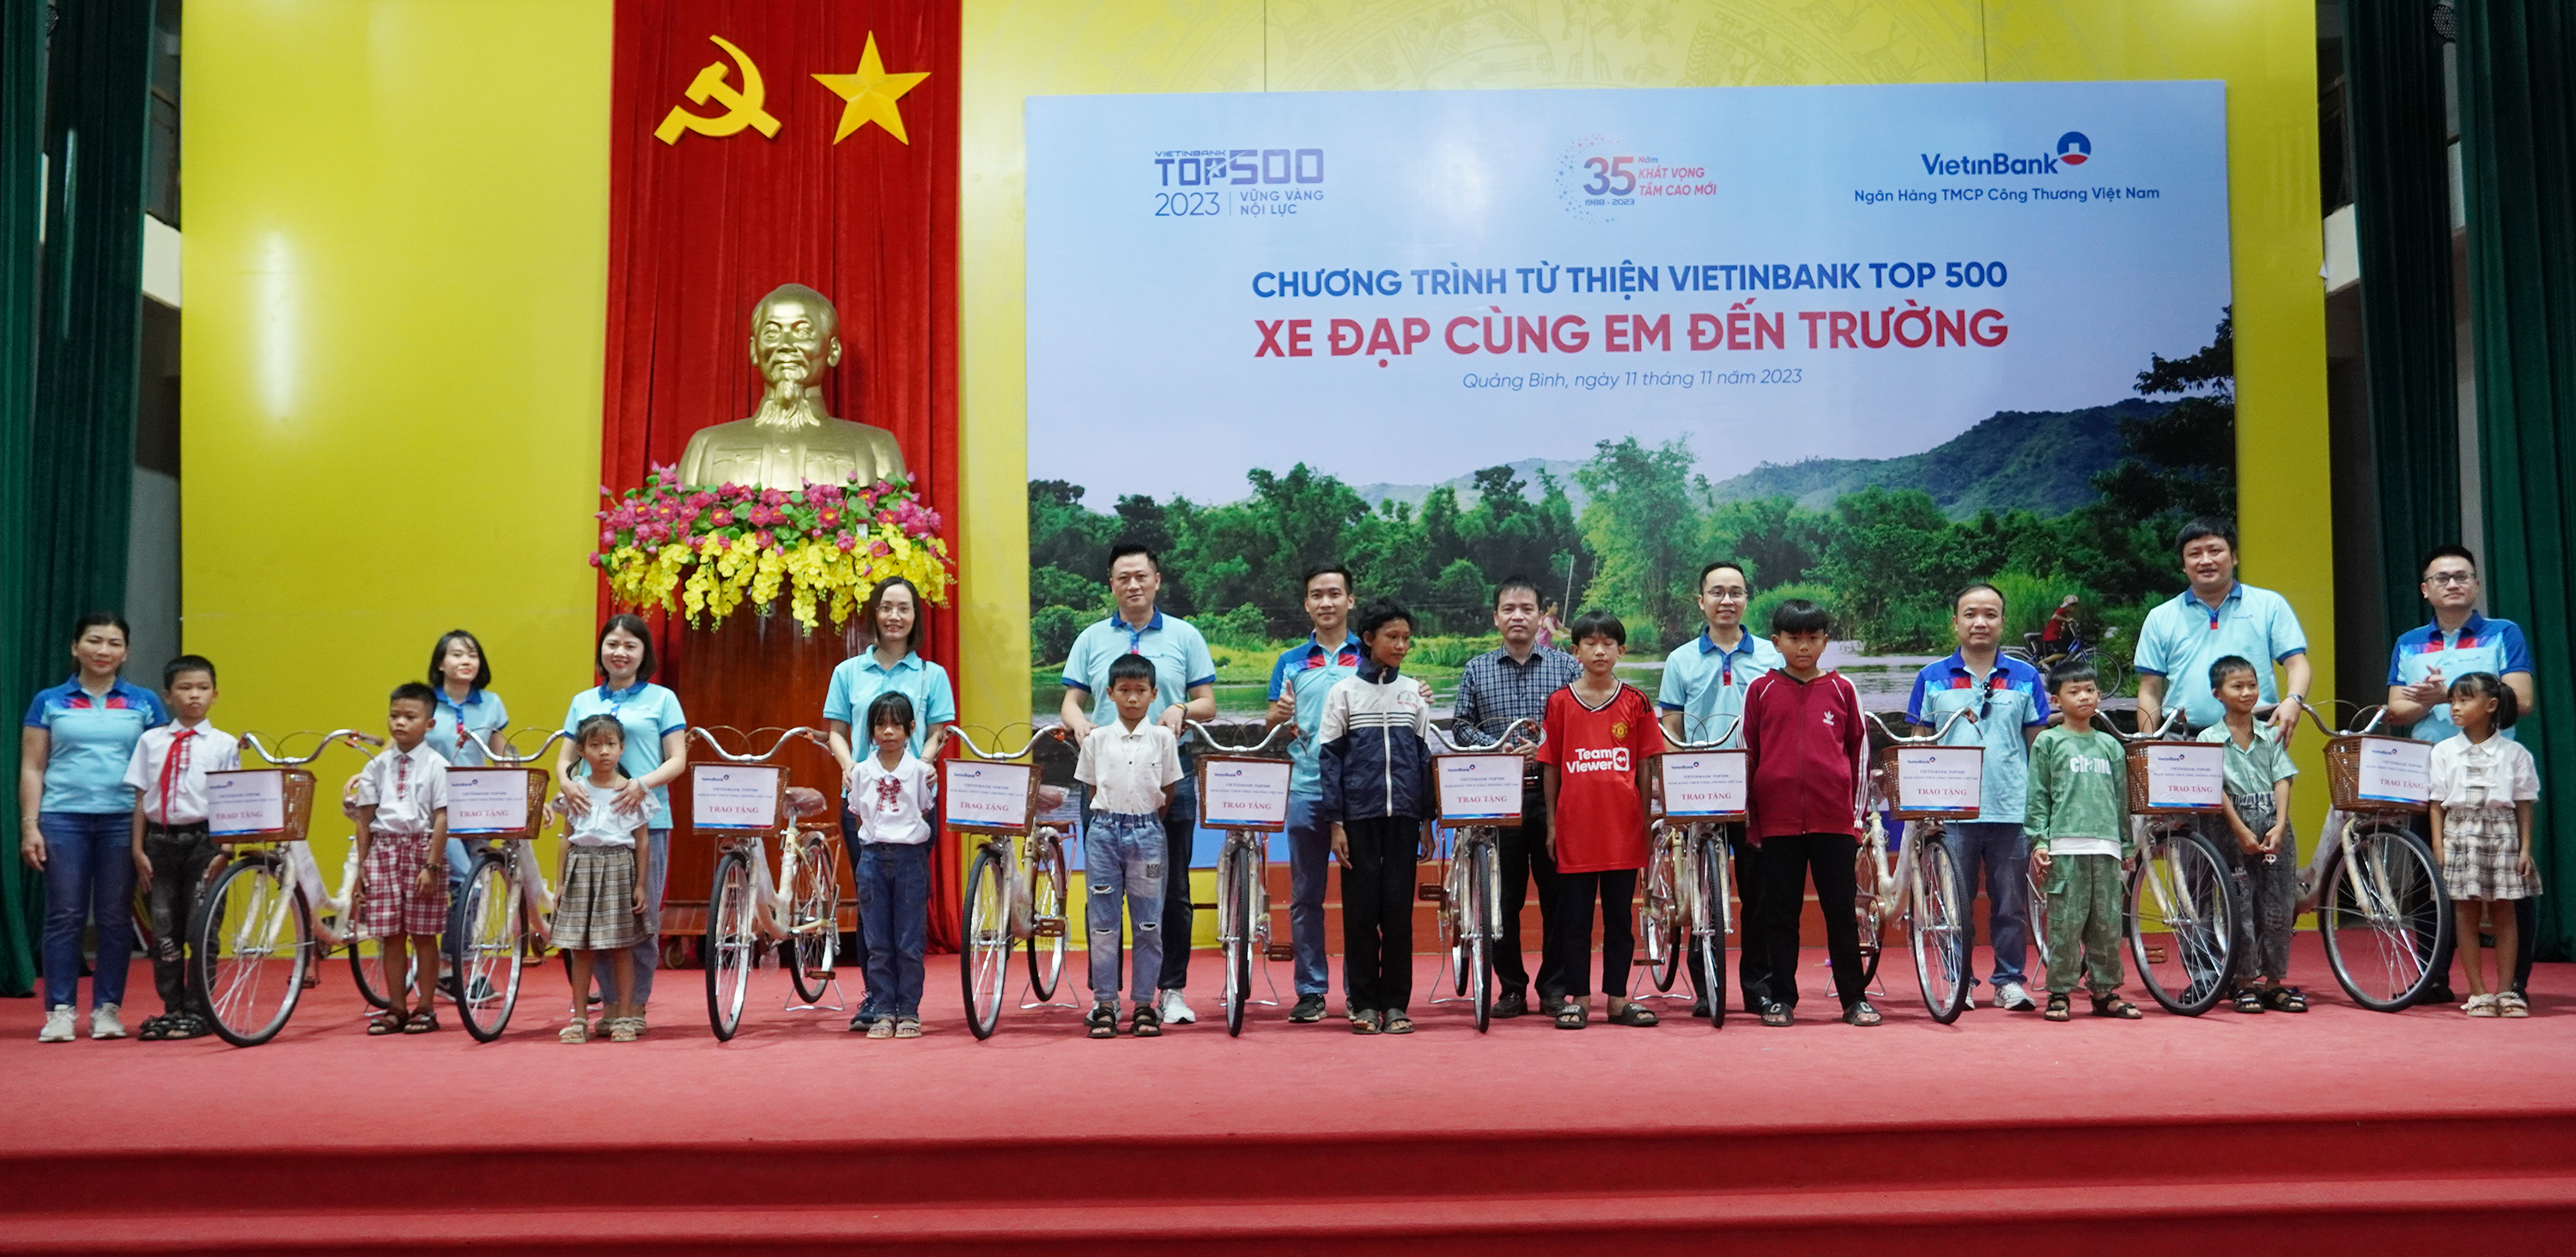 Đoàn từ thiện Hipo VietinBank top 500 và huyện Lệ Thủy trao tặng xe đạp cho học sinh nghèo tại huyện Lệ Thủy.